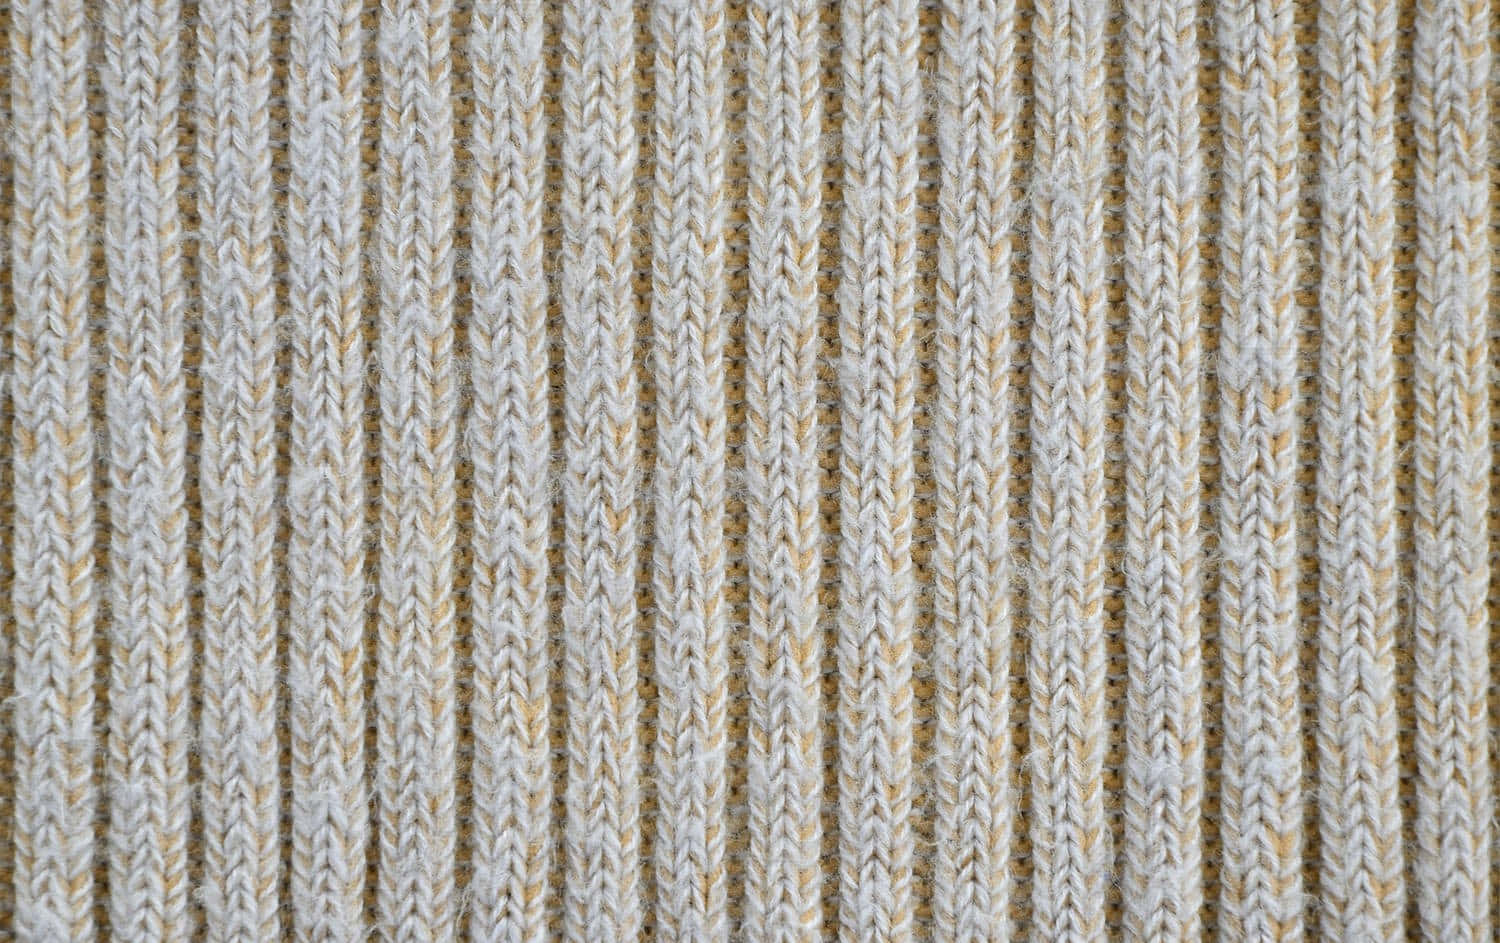 Textured Yarn Pattern Background Wallpaper